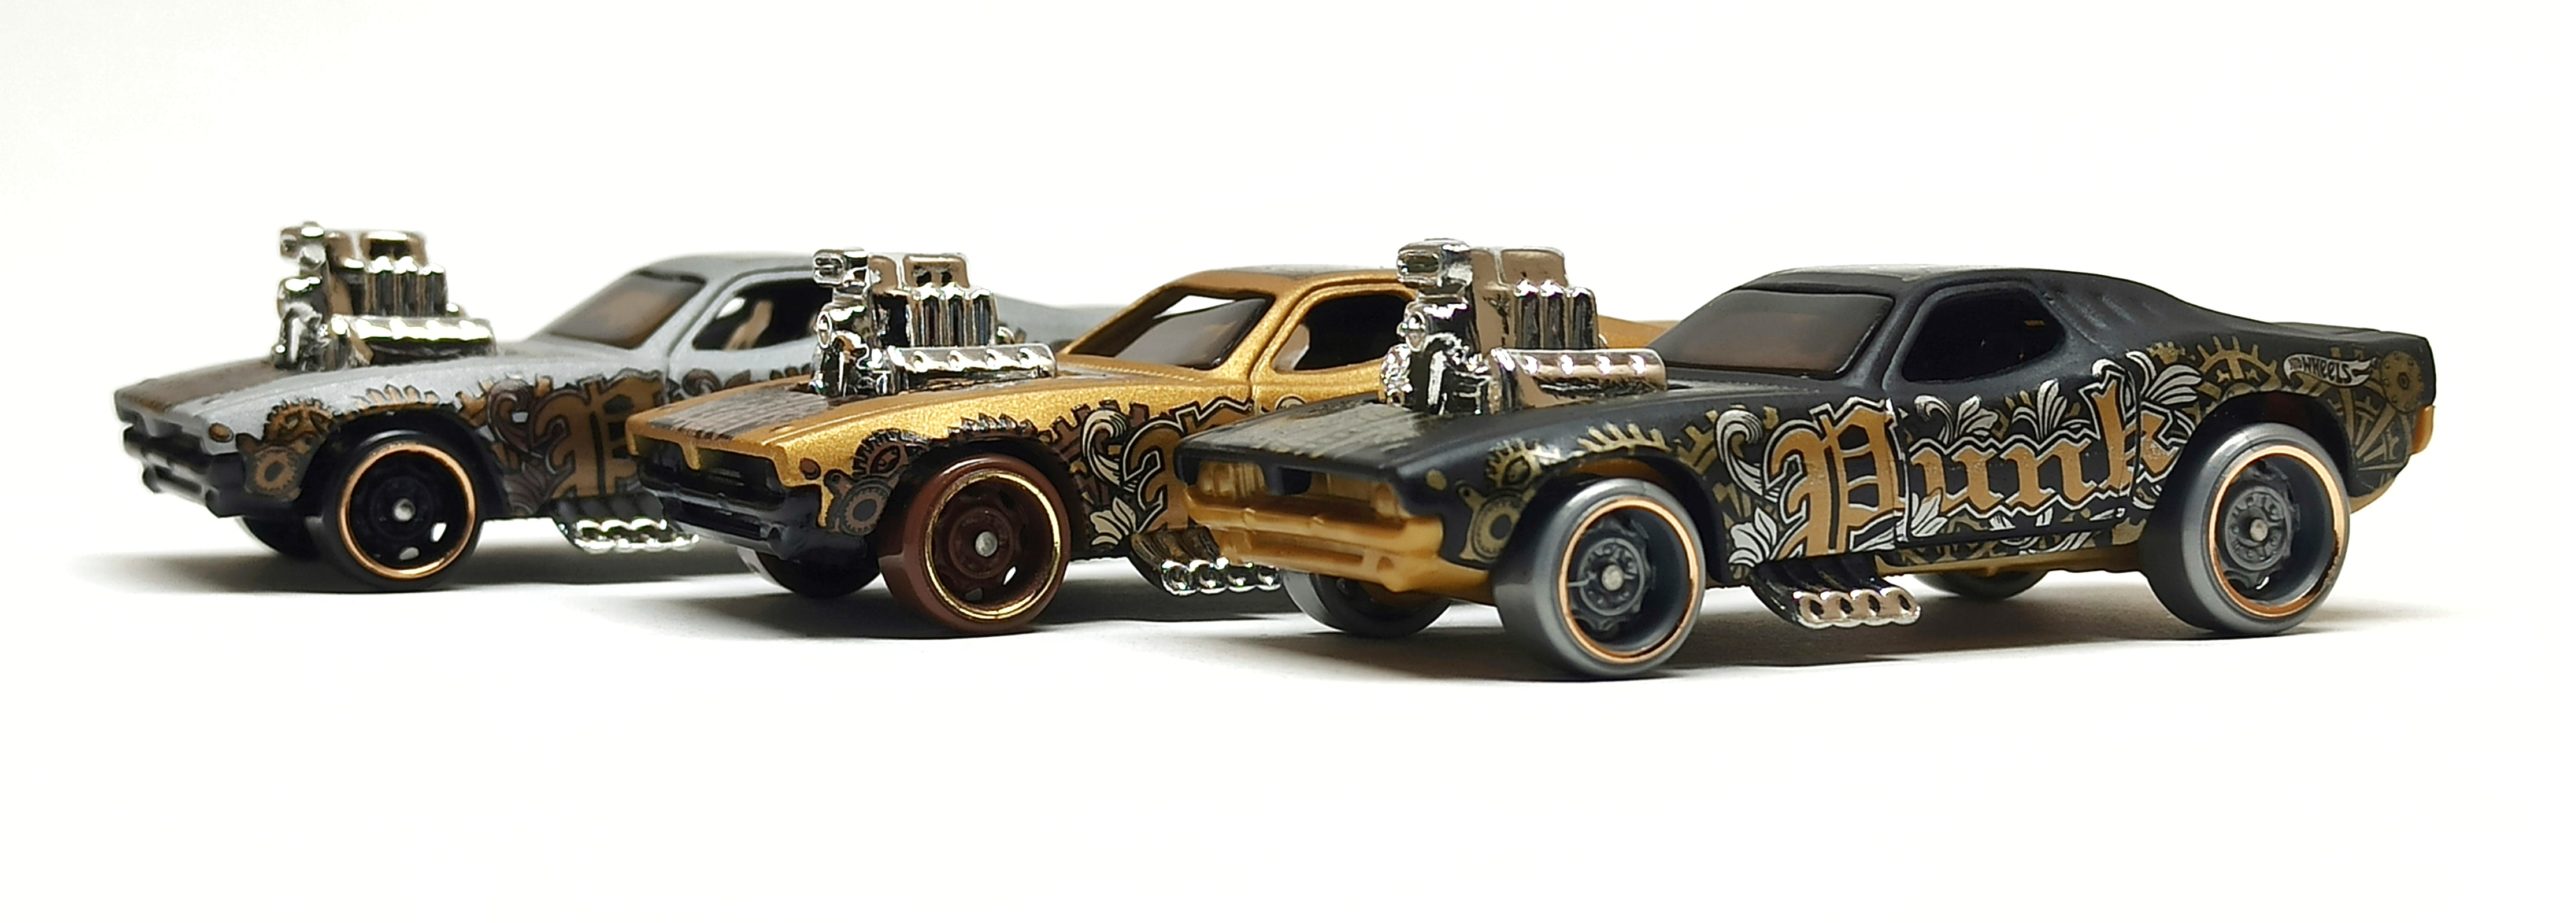 Hot Wheels Rodger Dodger (GHC20 + GHG60 +  GHD92) 2020 (67/250) HW Art Cars (8/10) matte black + gold (Kroger Exclusive) + grey